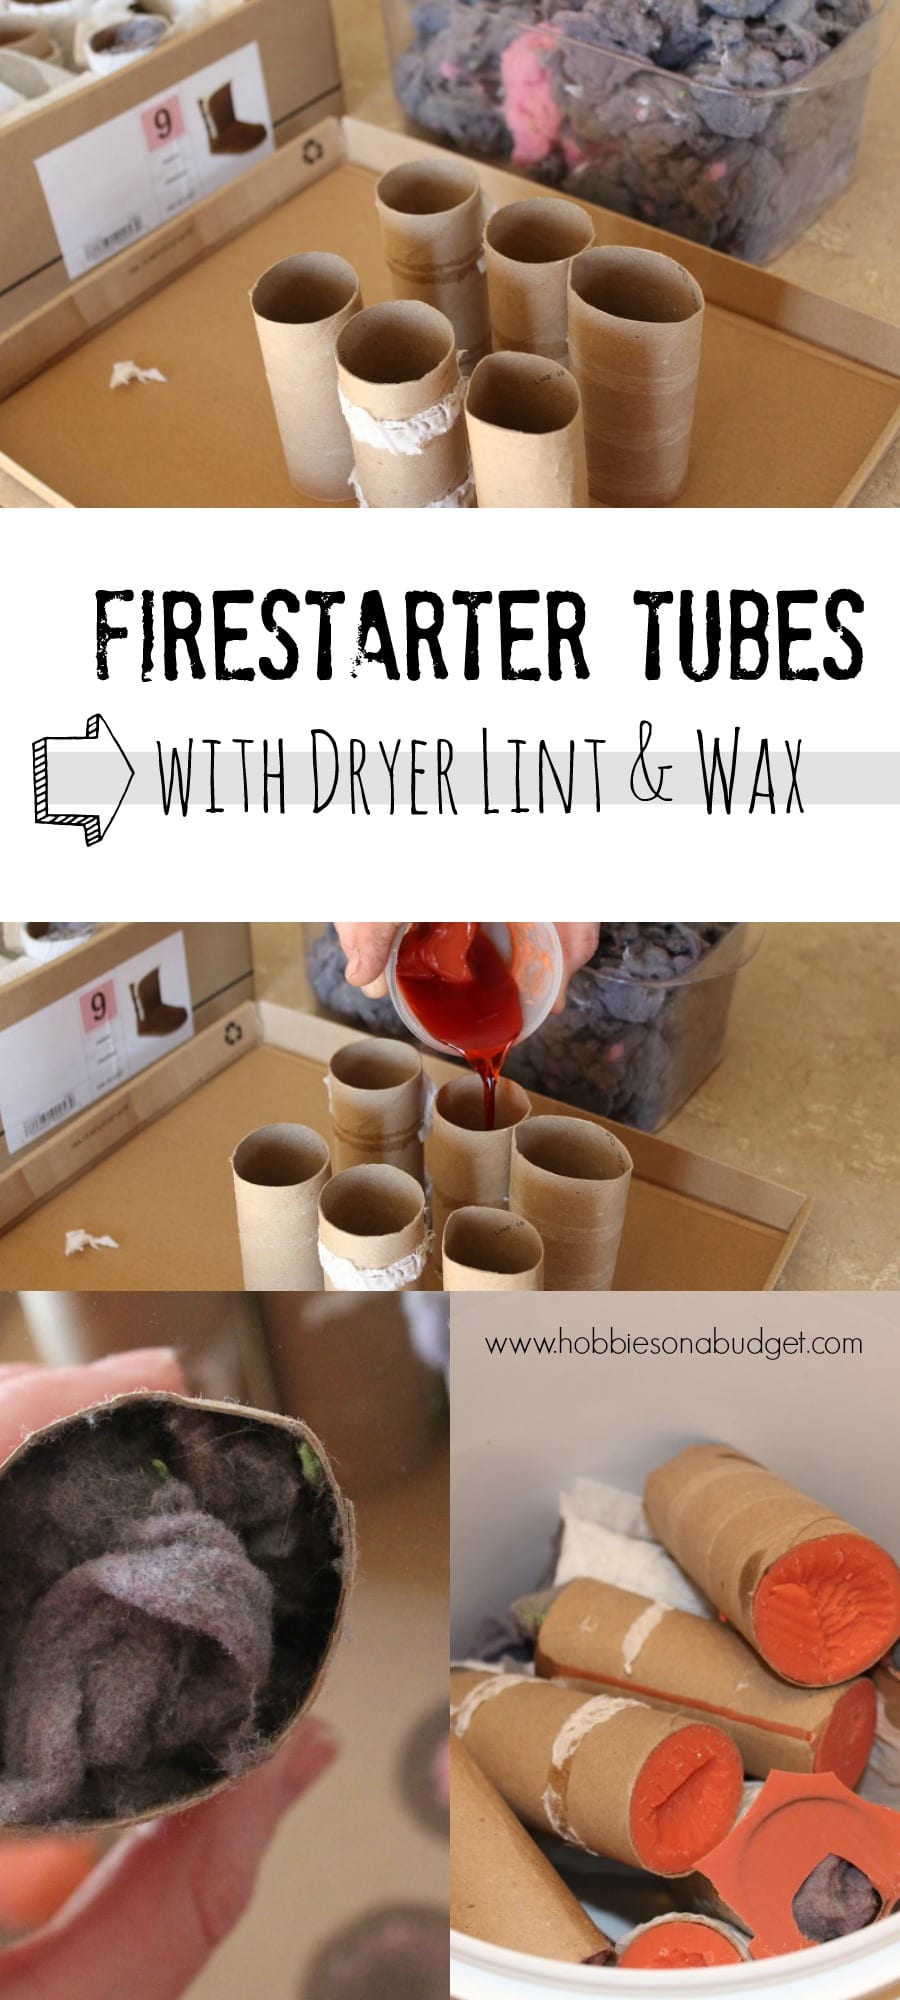 firestarter-tubes